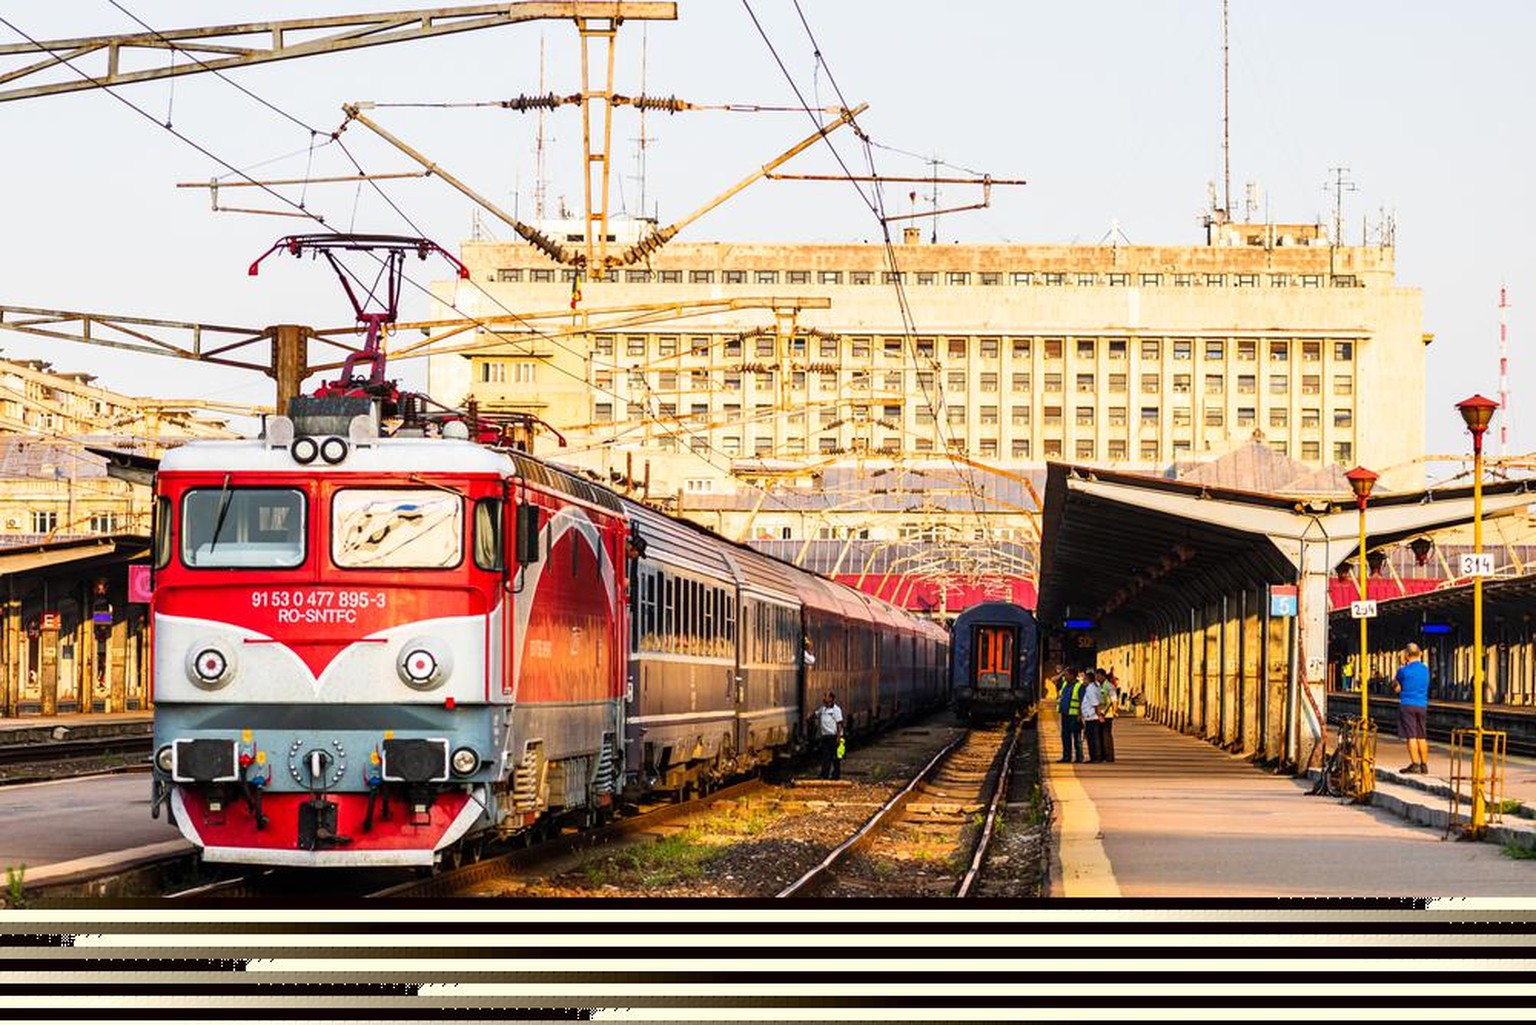 Mit Simpletrain lassen sich Reisen an exotische Bahn-Destinationen wie Rumänien buchen. 